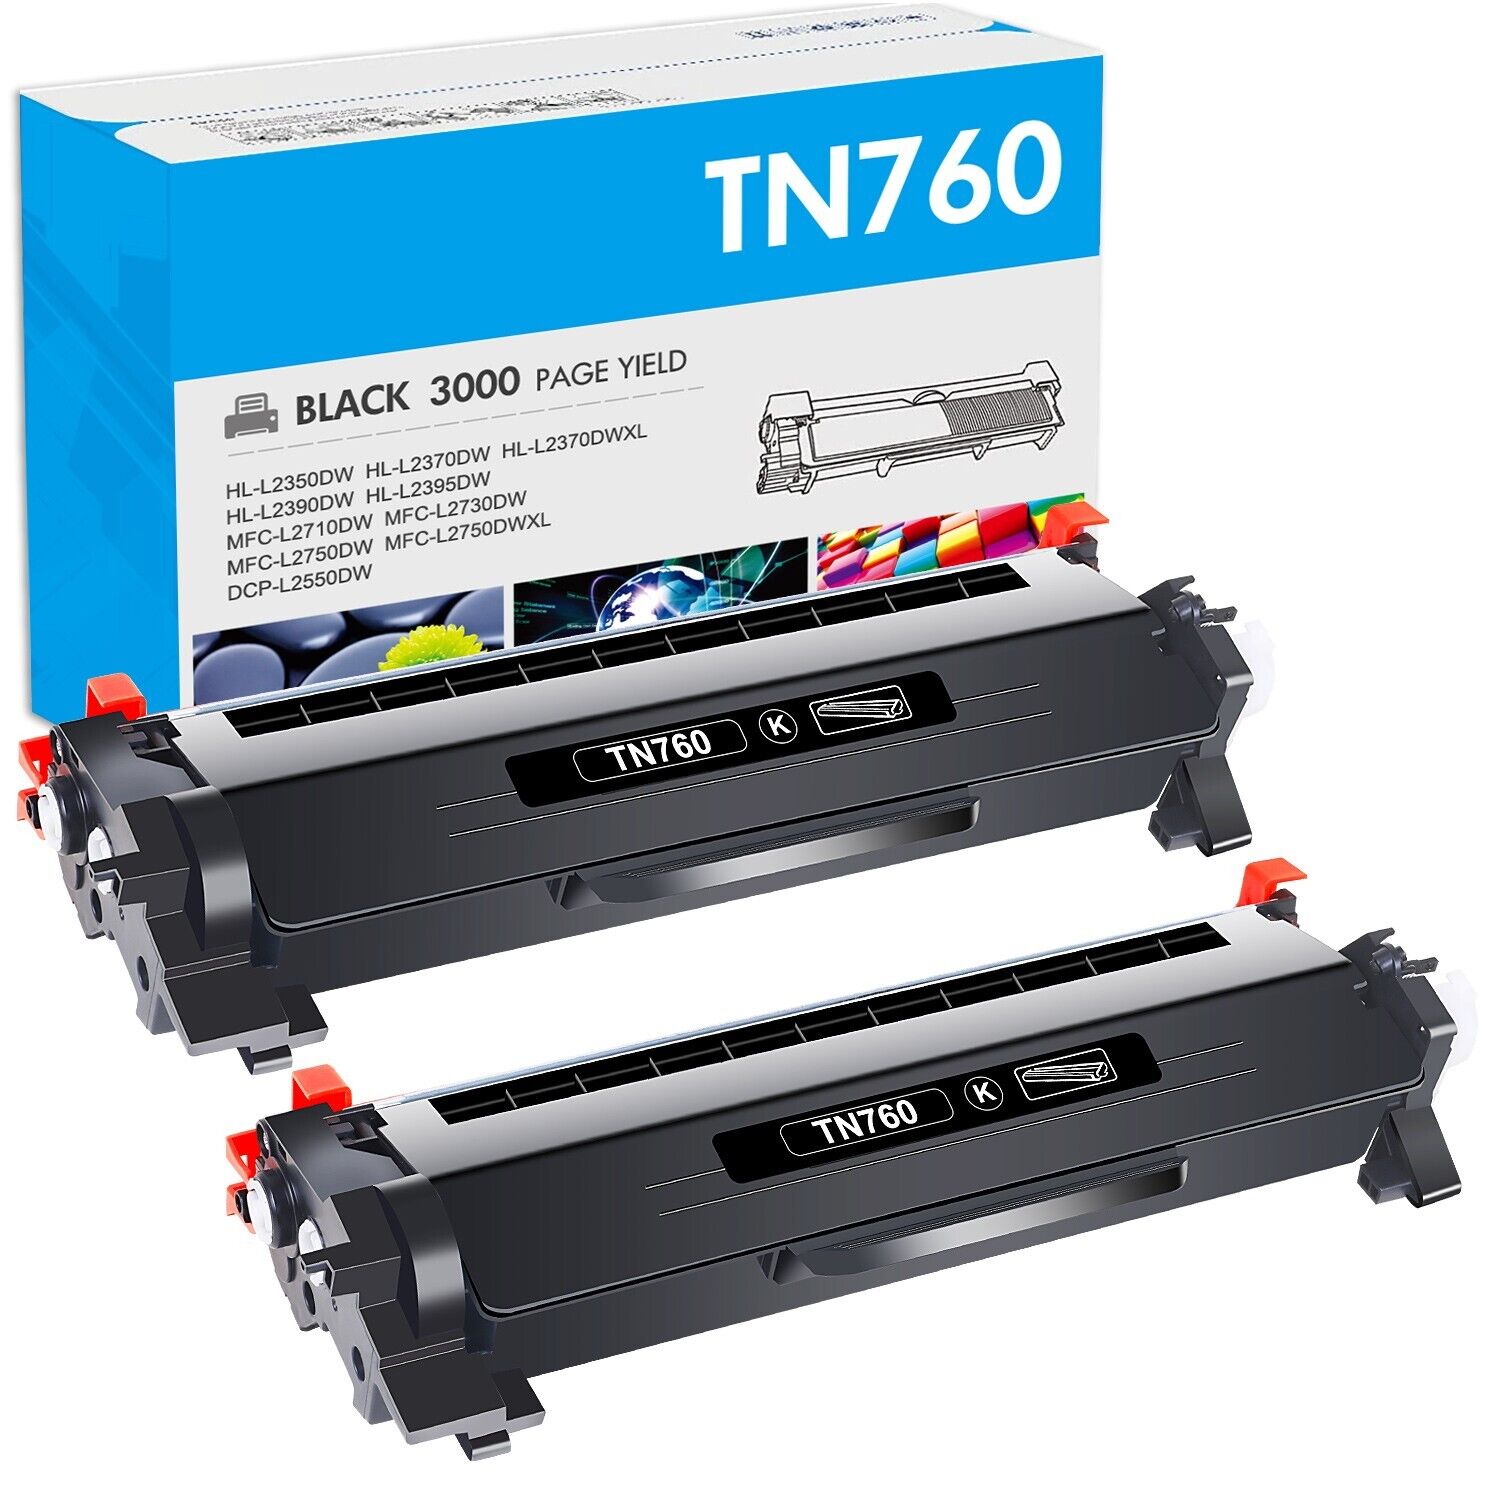 2PK TN760 TN730 Toner Cartridge for Brother HL-L2350DW HL-L2370DW DCP-L2550DW